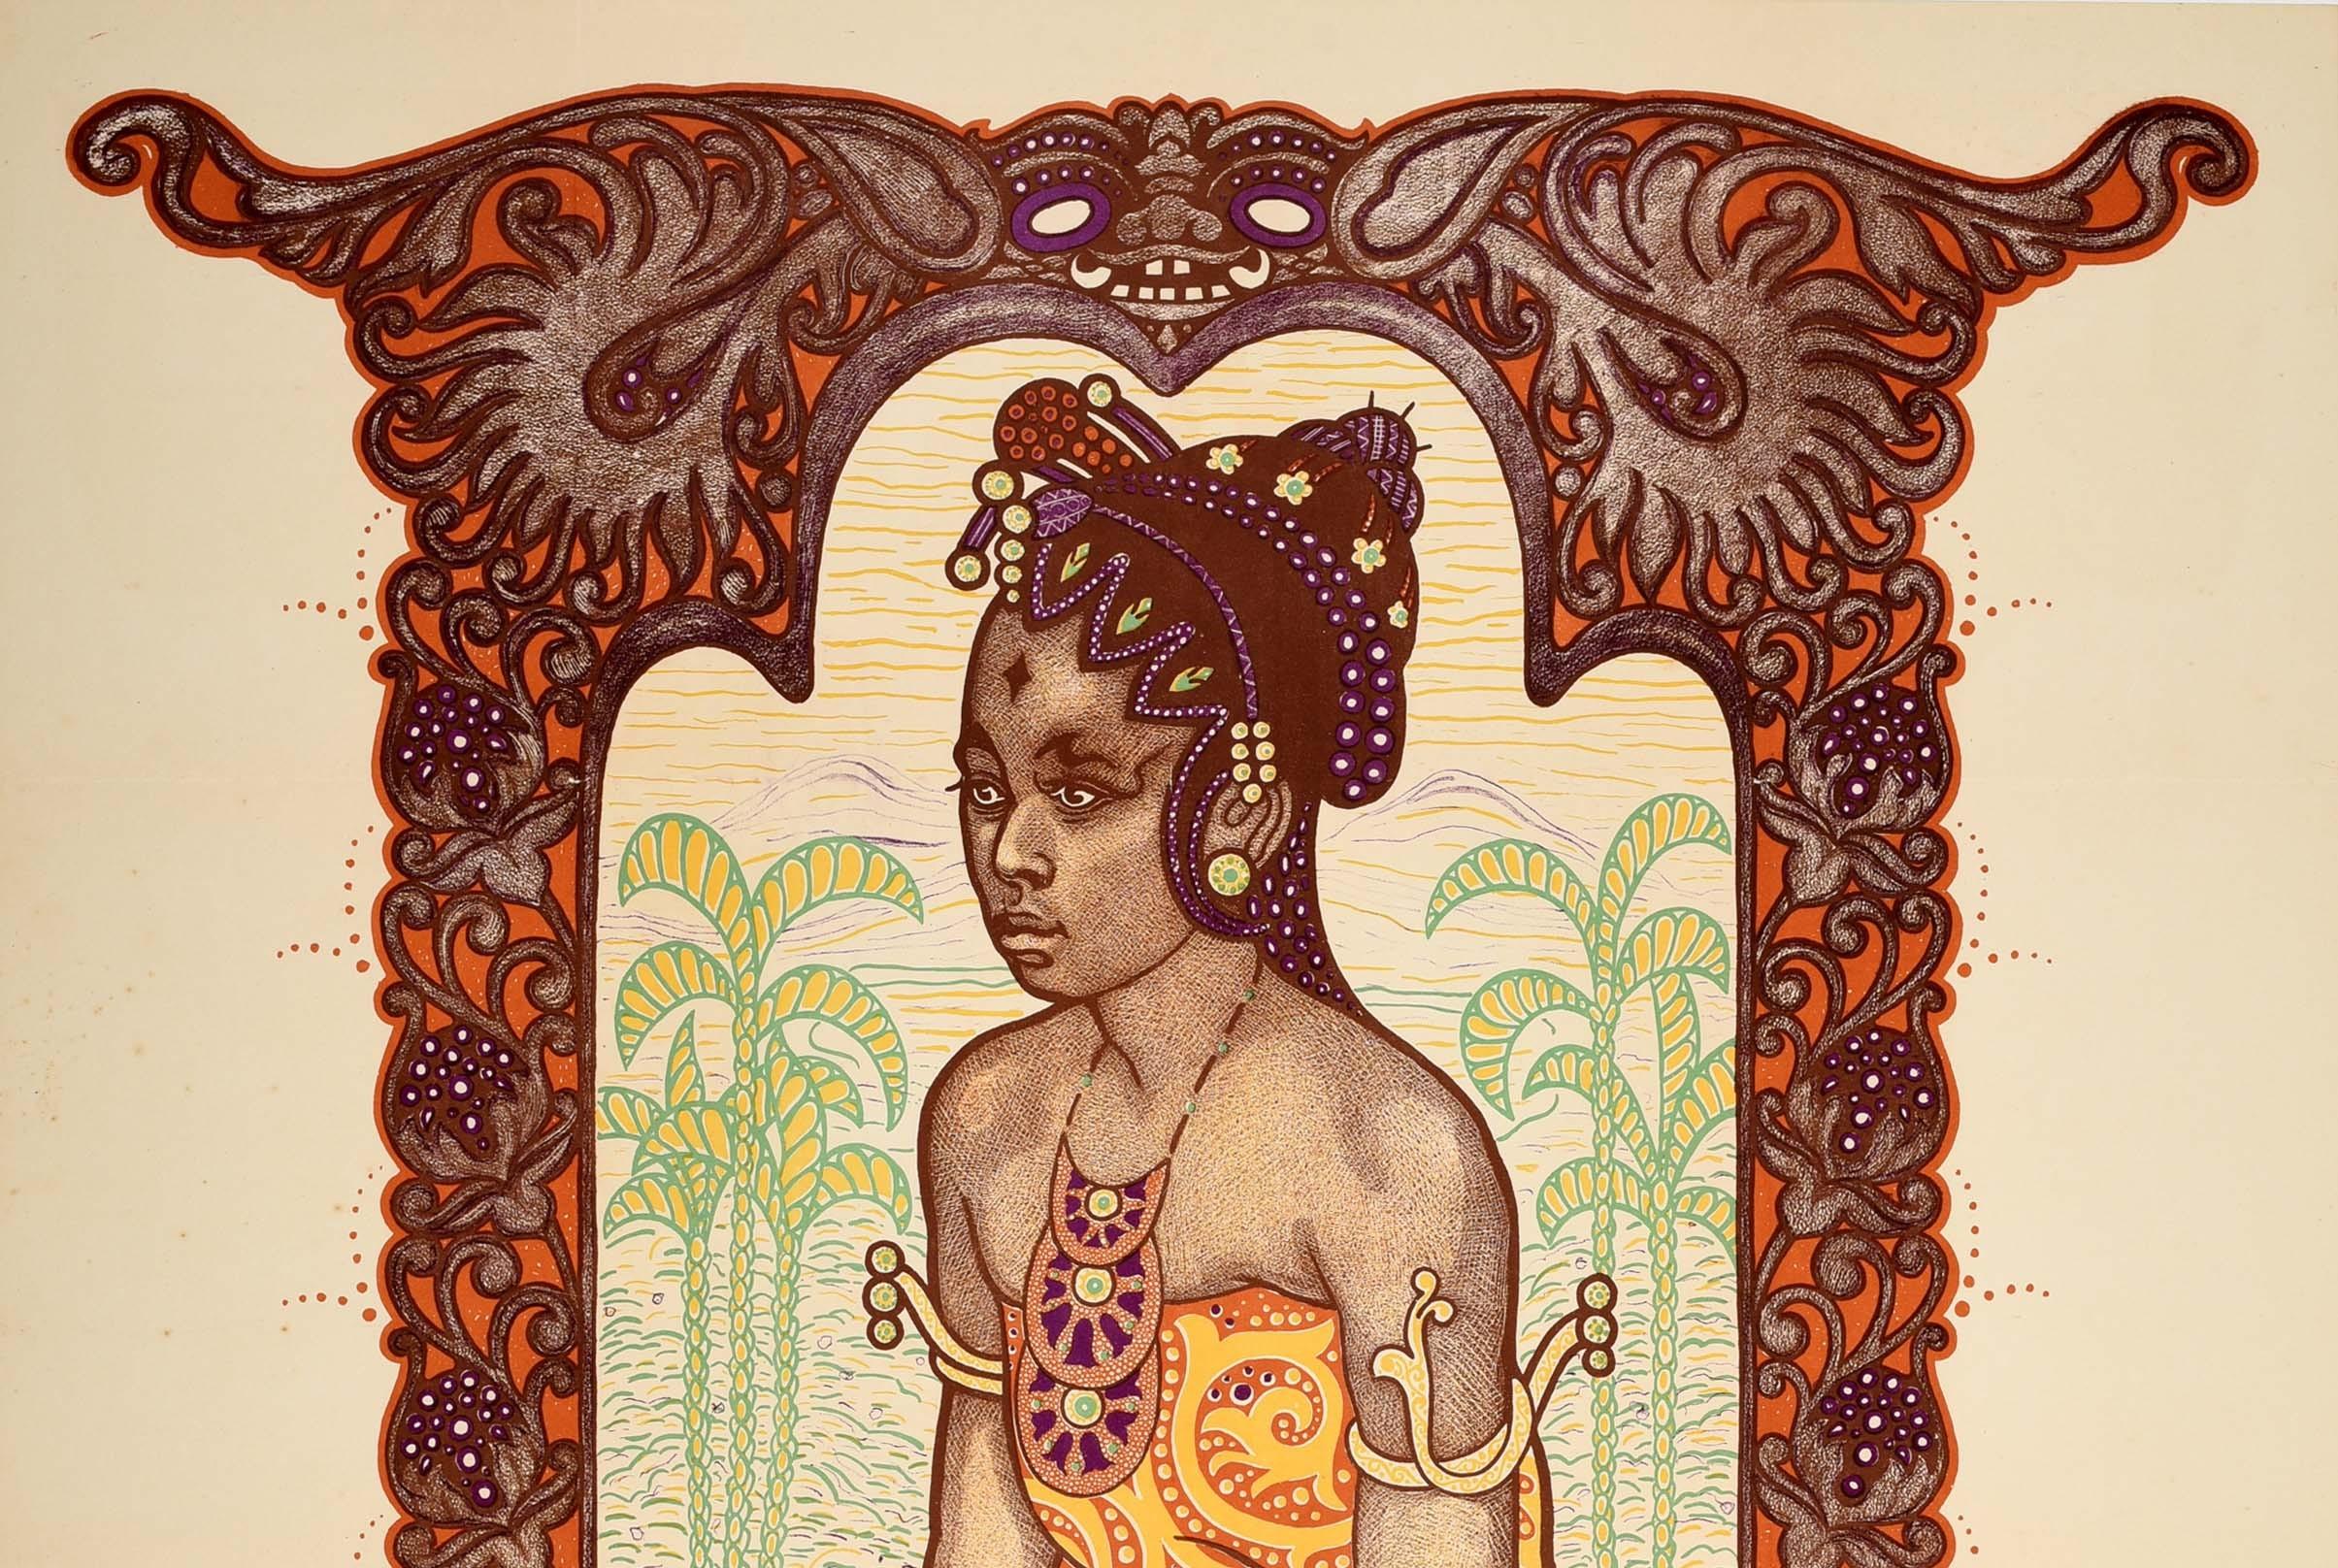 Original Antikes Originalplakat, Kolonialausstellung in Indonesien 1914, Java, Indonesien – Print von Albert Hahn